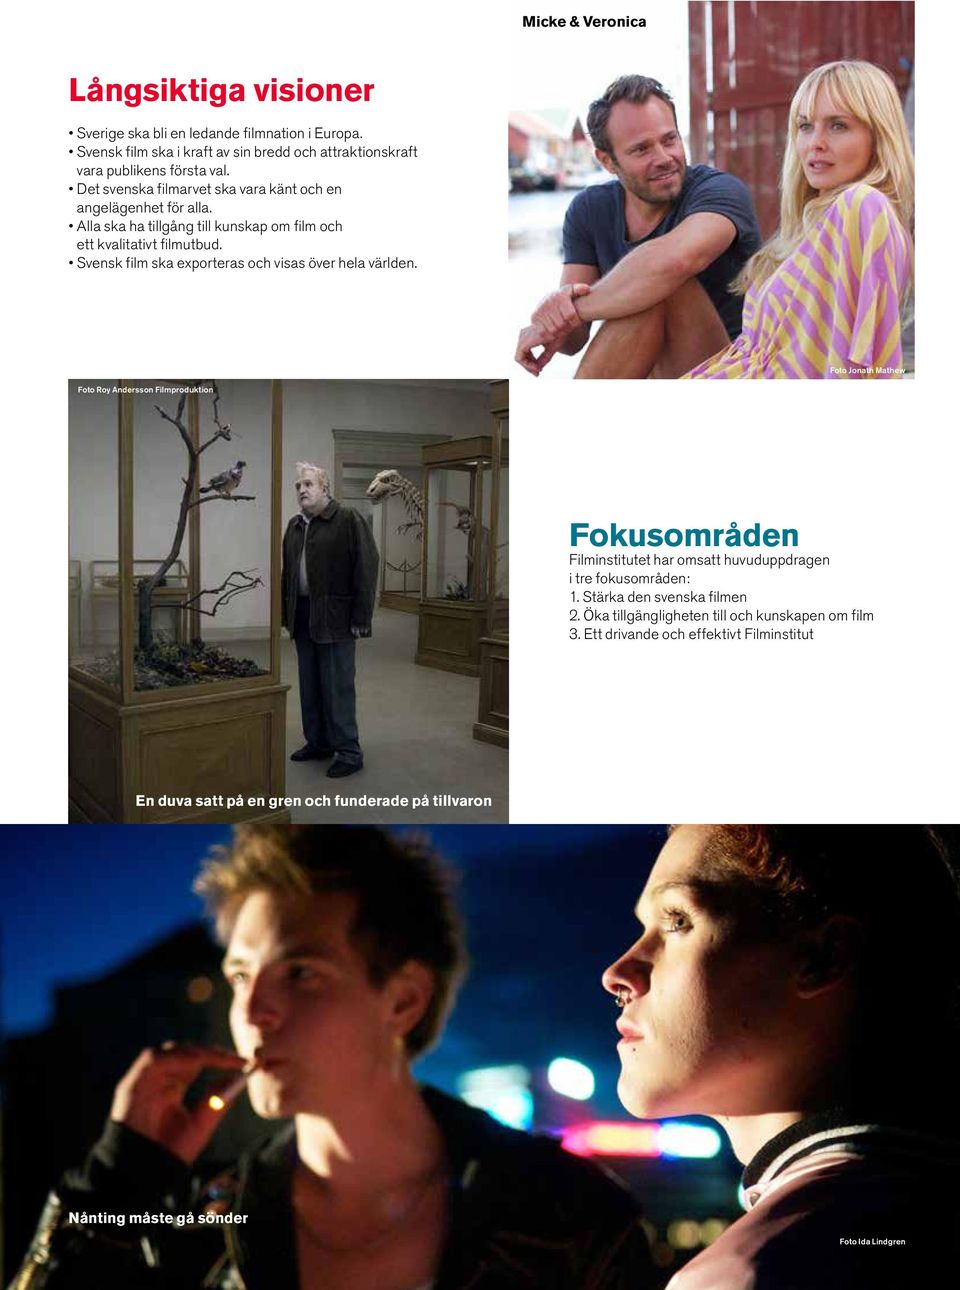 Svensk film ska exporteras och visas över hela världen.